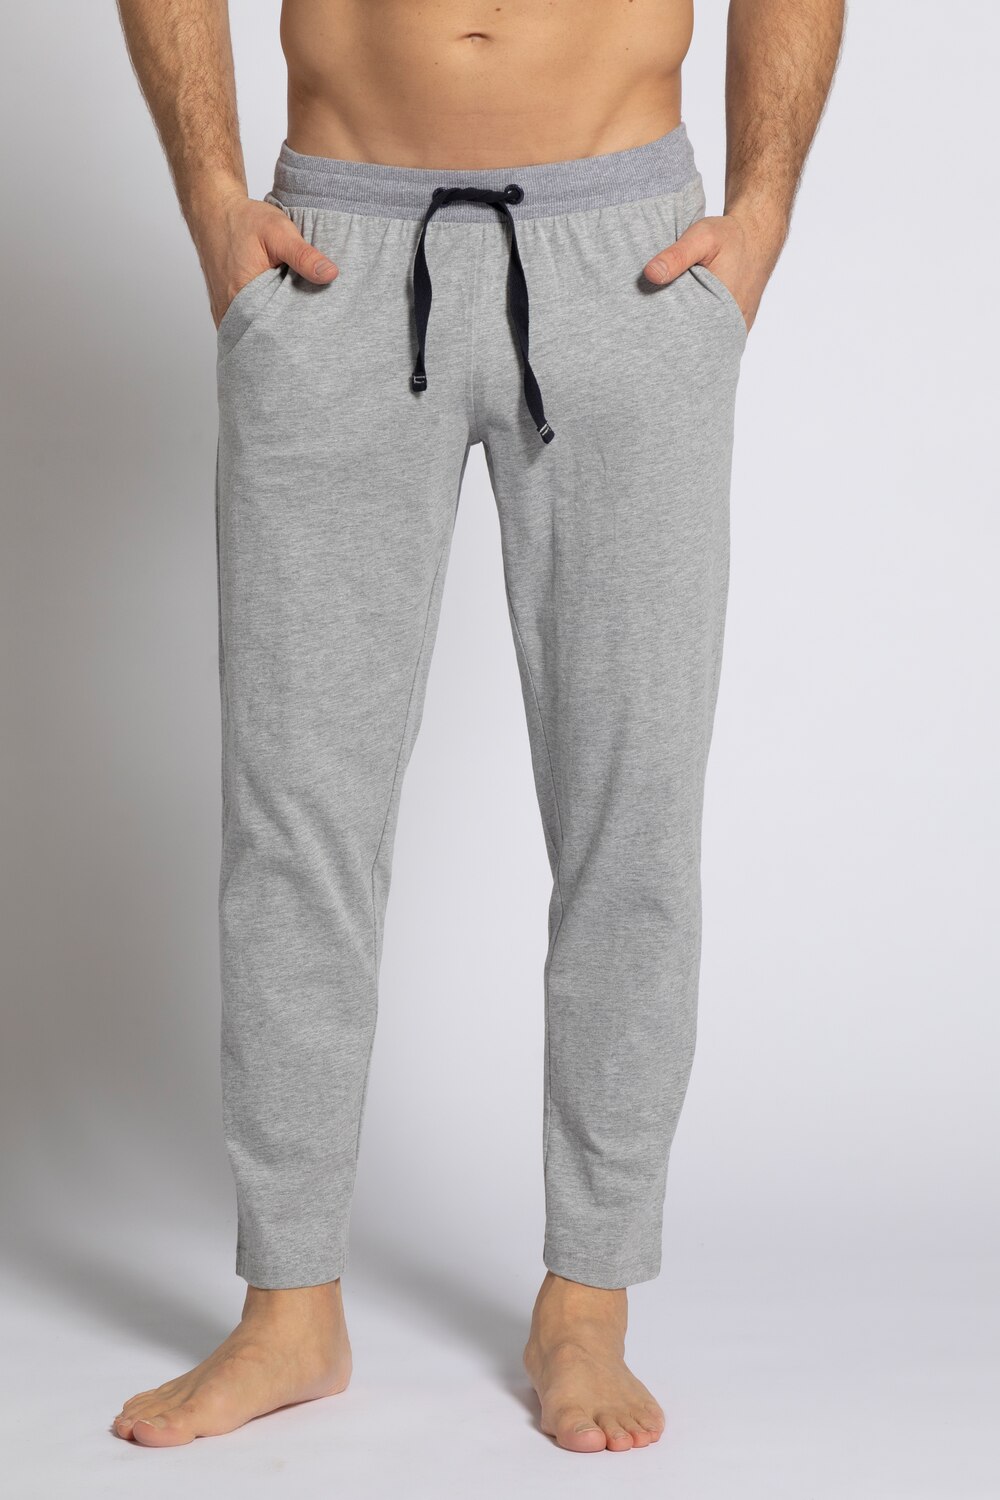 Grote Maten pyjamabroek, Heren, grijs, Maat: 3XL, Katoen/Polyester, JP1880